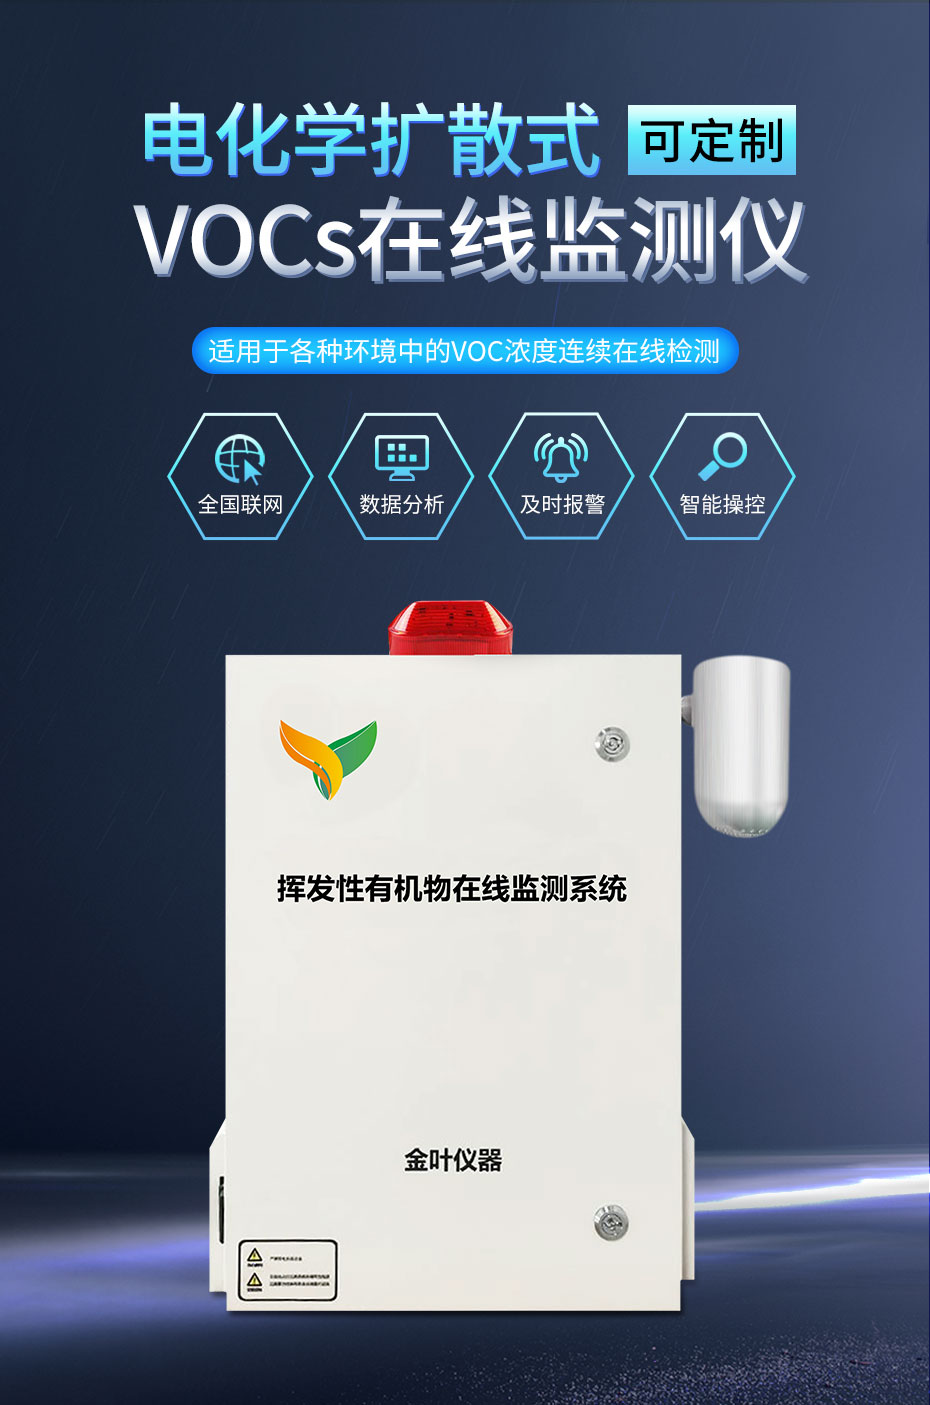 挥发性有机废气是vocs在线监测系统监测的主要对象